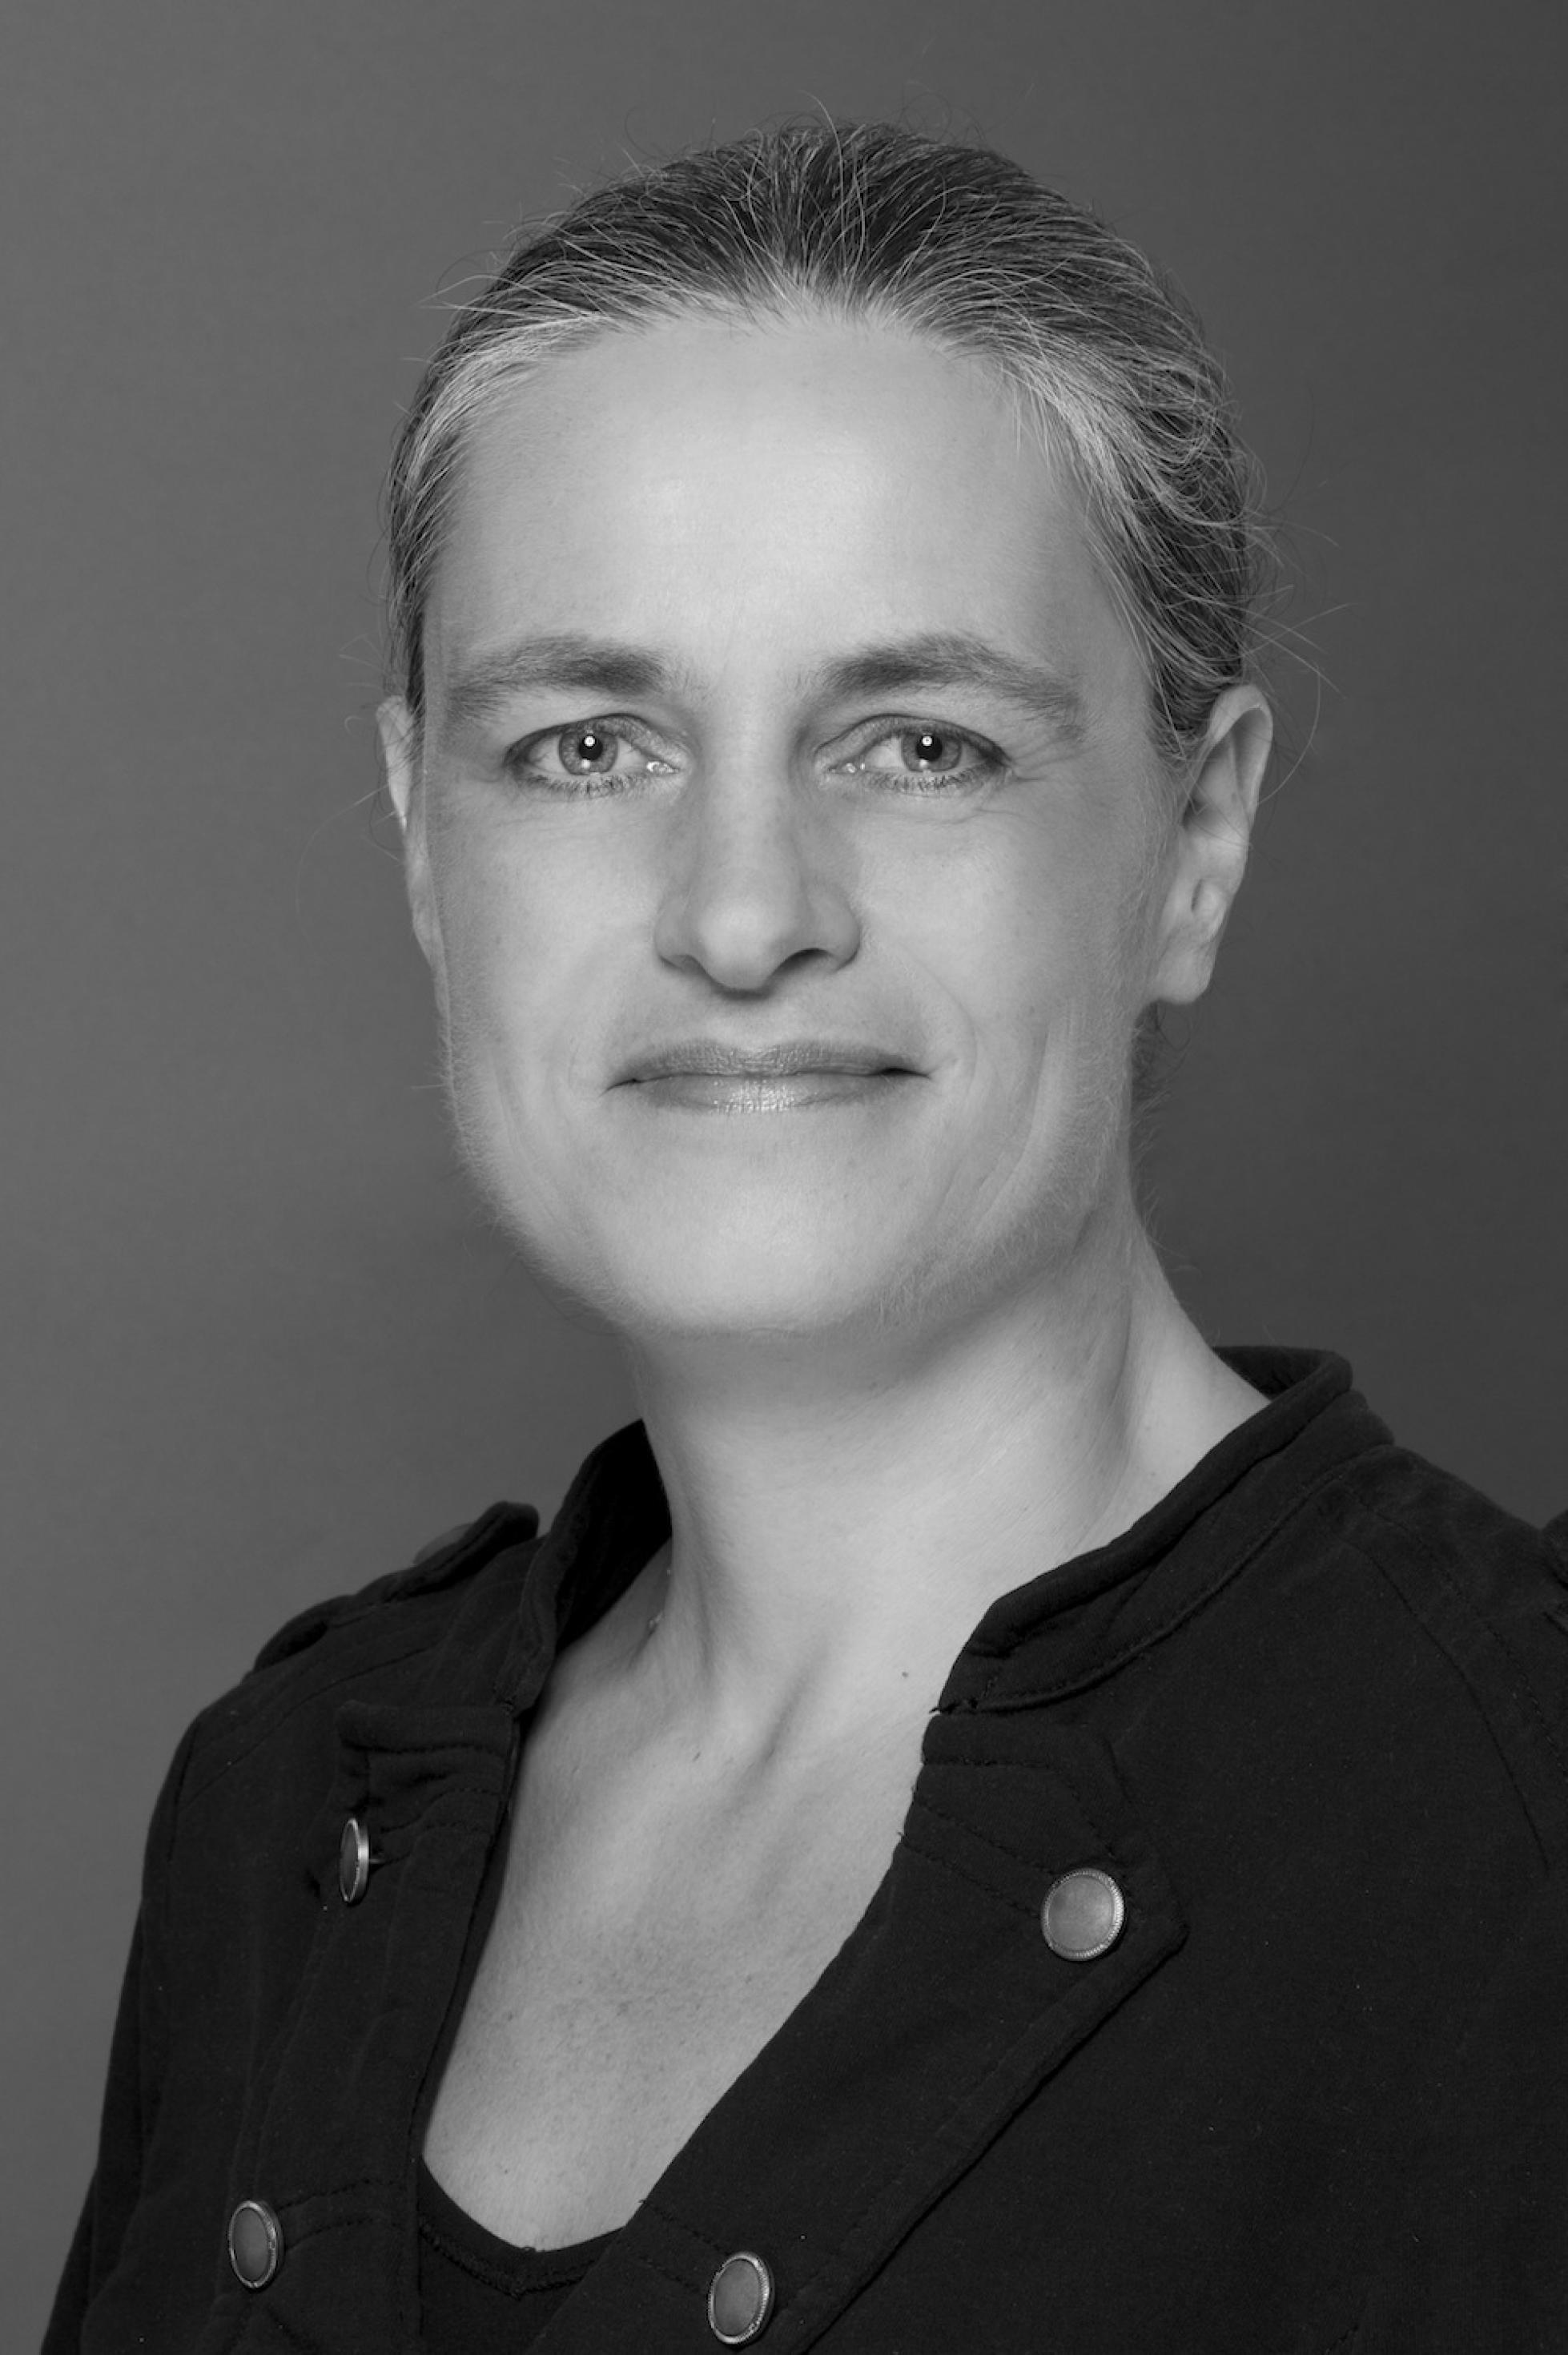 Porträt von Corinna Schaefer in schwarz-weiß